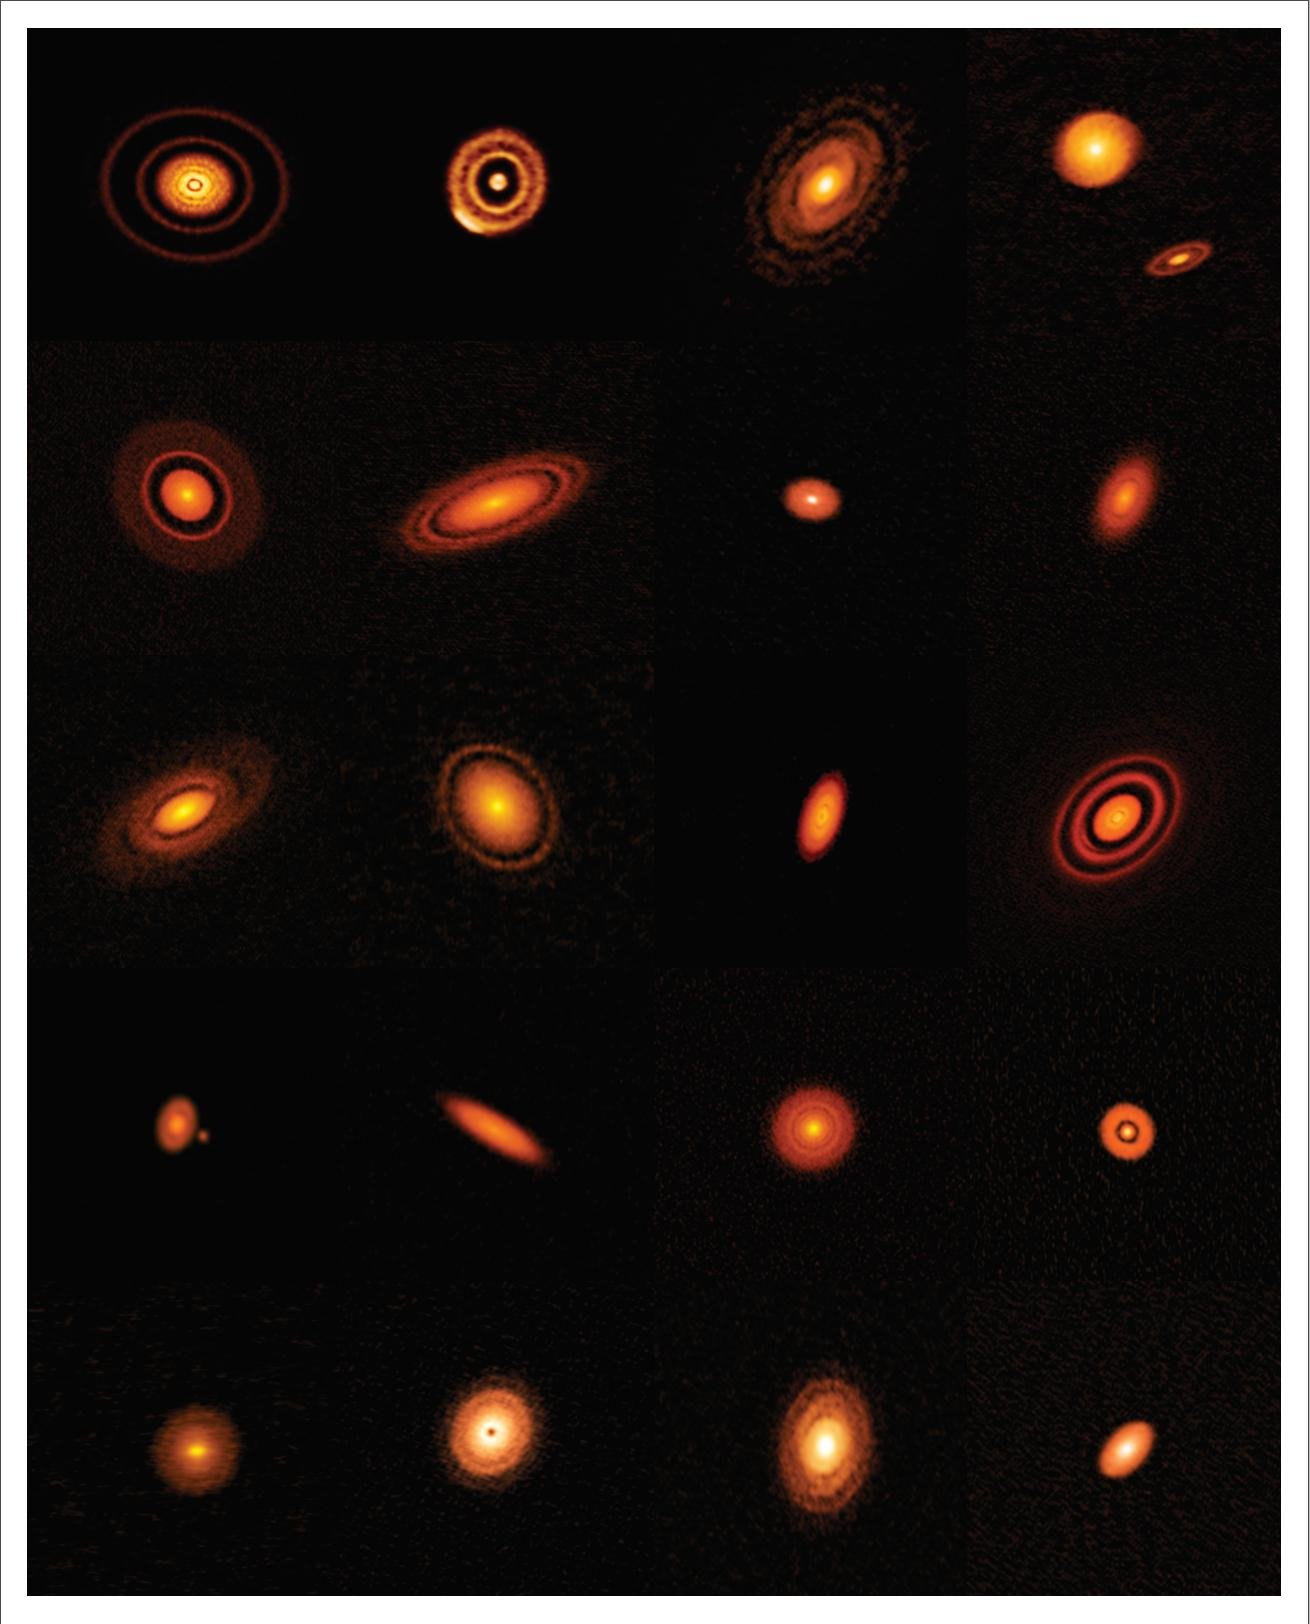 Composição de imagens de discos protoplanetários